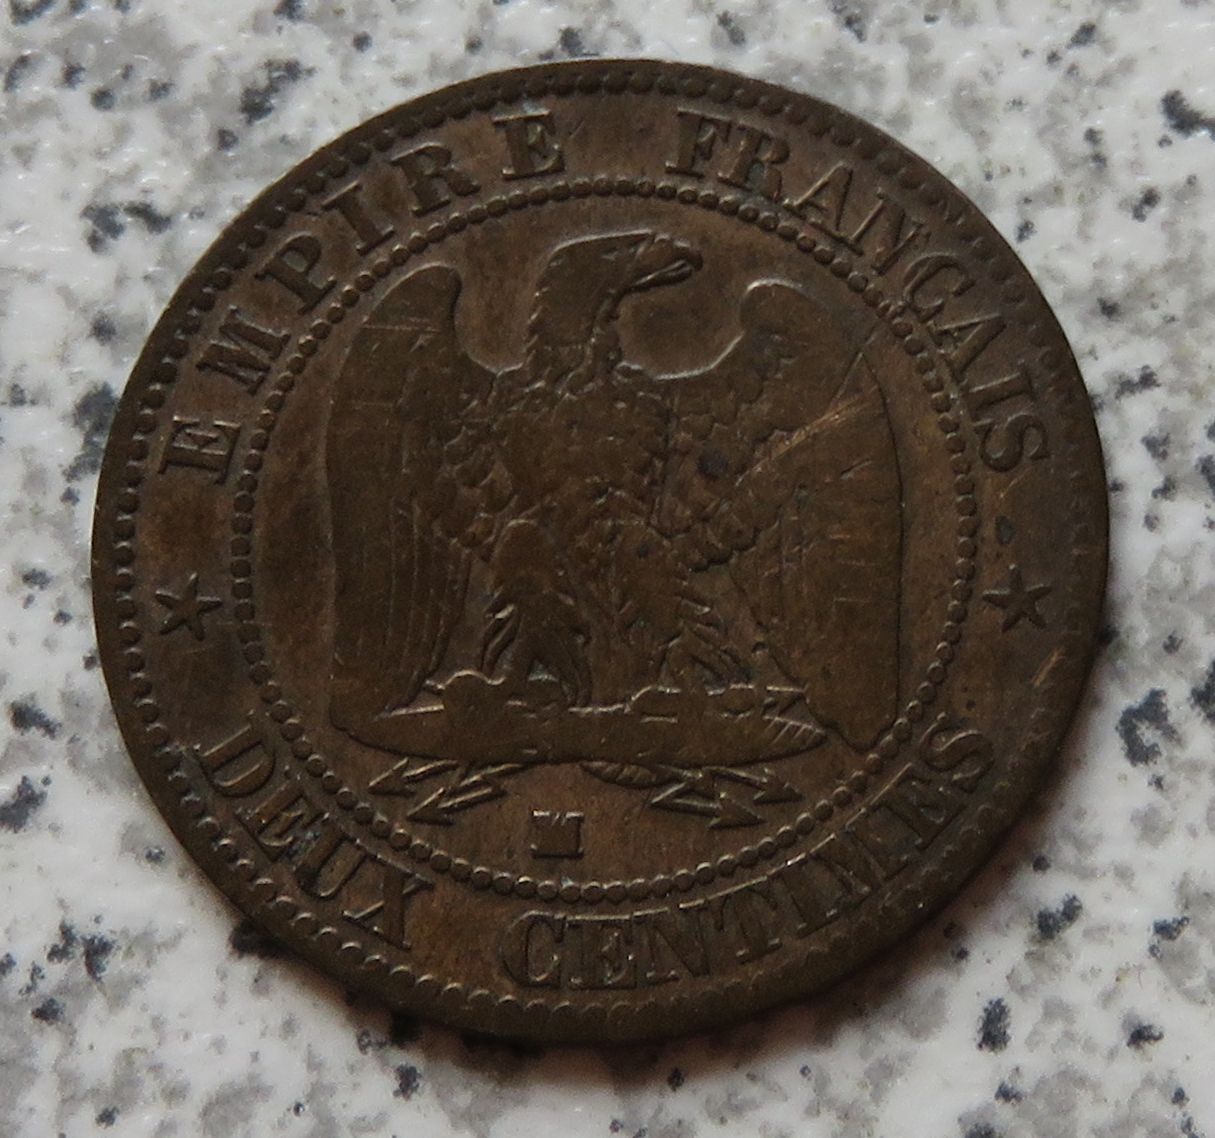  Frankreich 2 Centimes 1855 MA   